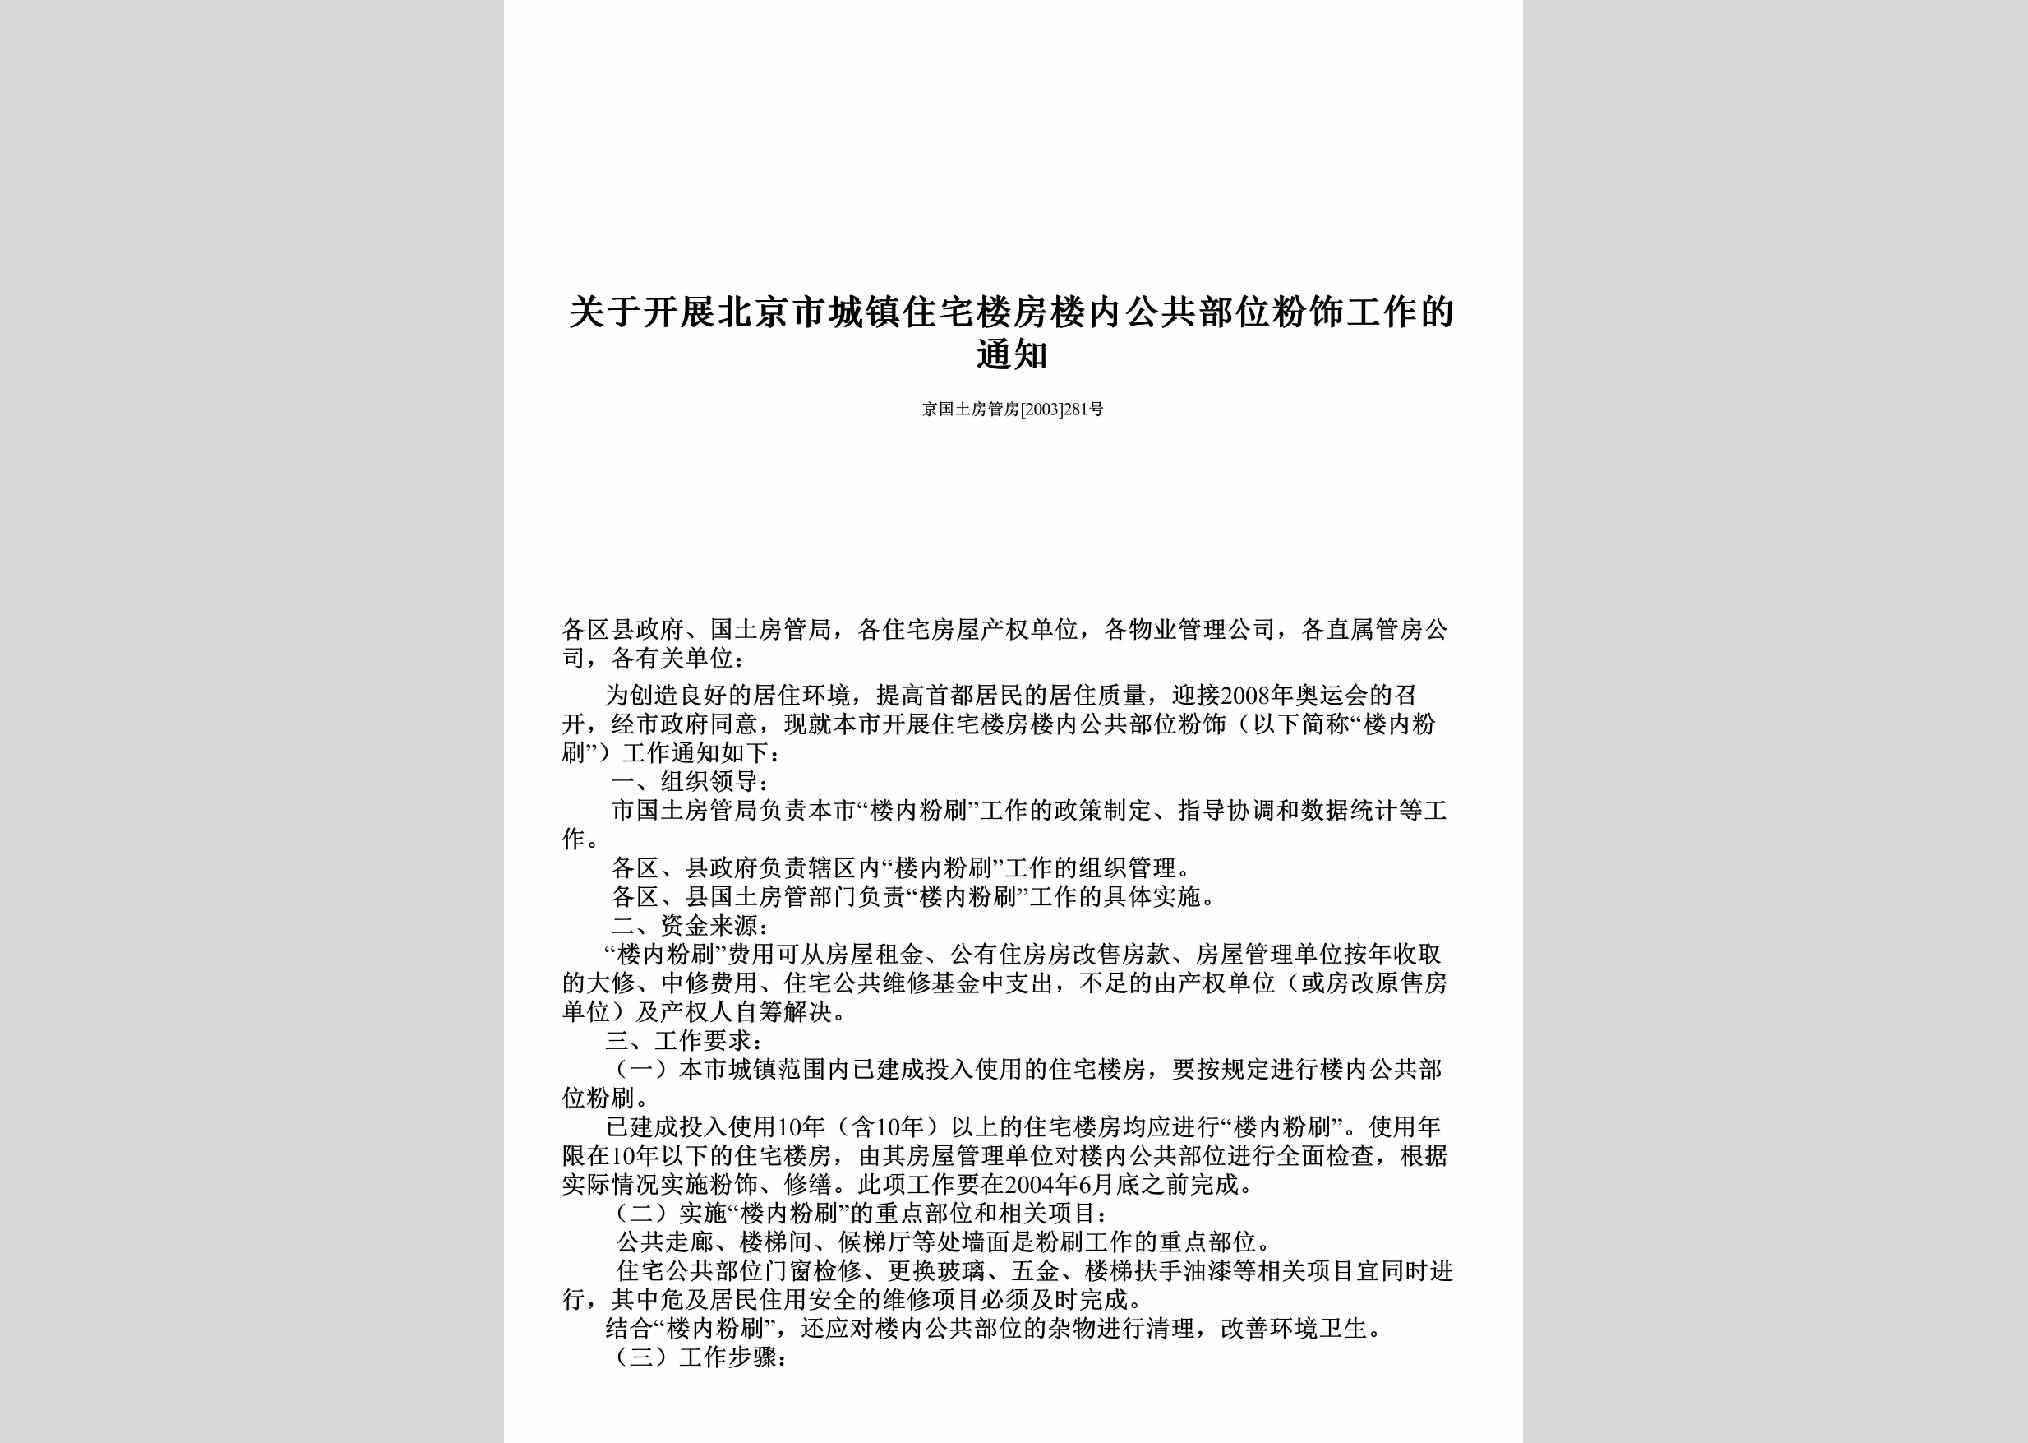 京国土房管房[2003]281号：关于开展北京市城镇住宅楼房楼内公共部位粉饰工作的通知